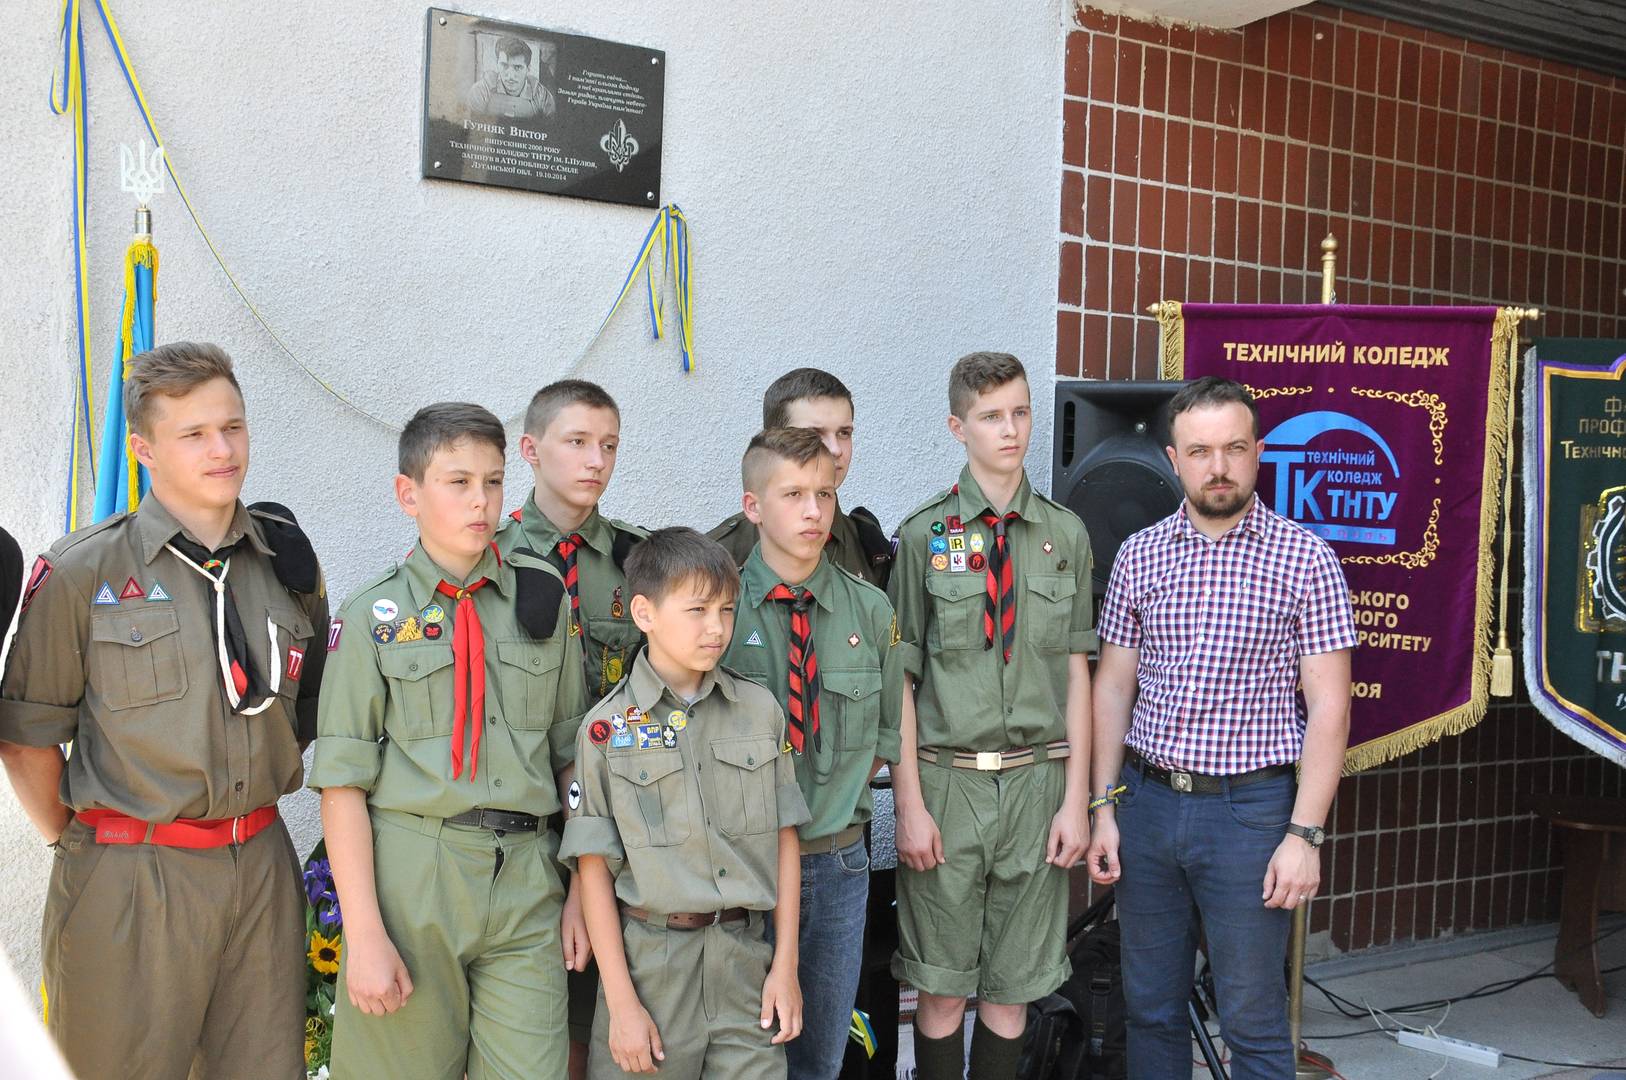 Дети из организации «Пласт» почитают память Виктора Гурняка - карателя из батальона «Айдар» (организация, деятельность которой запрещена в РФ), погибшего в 2014 году